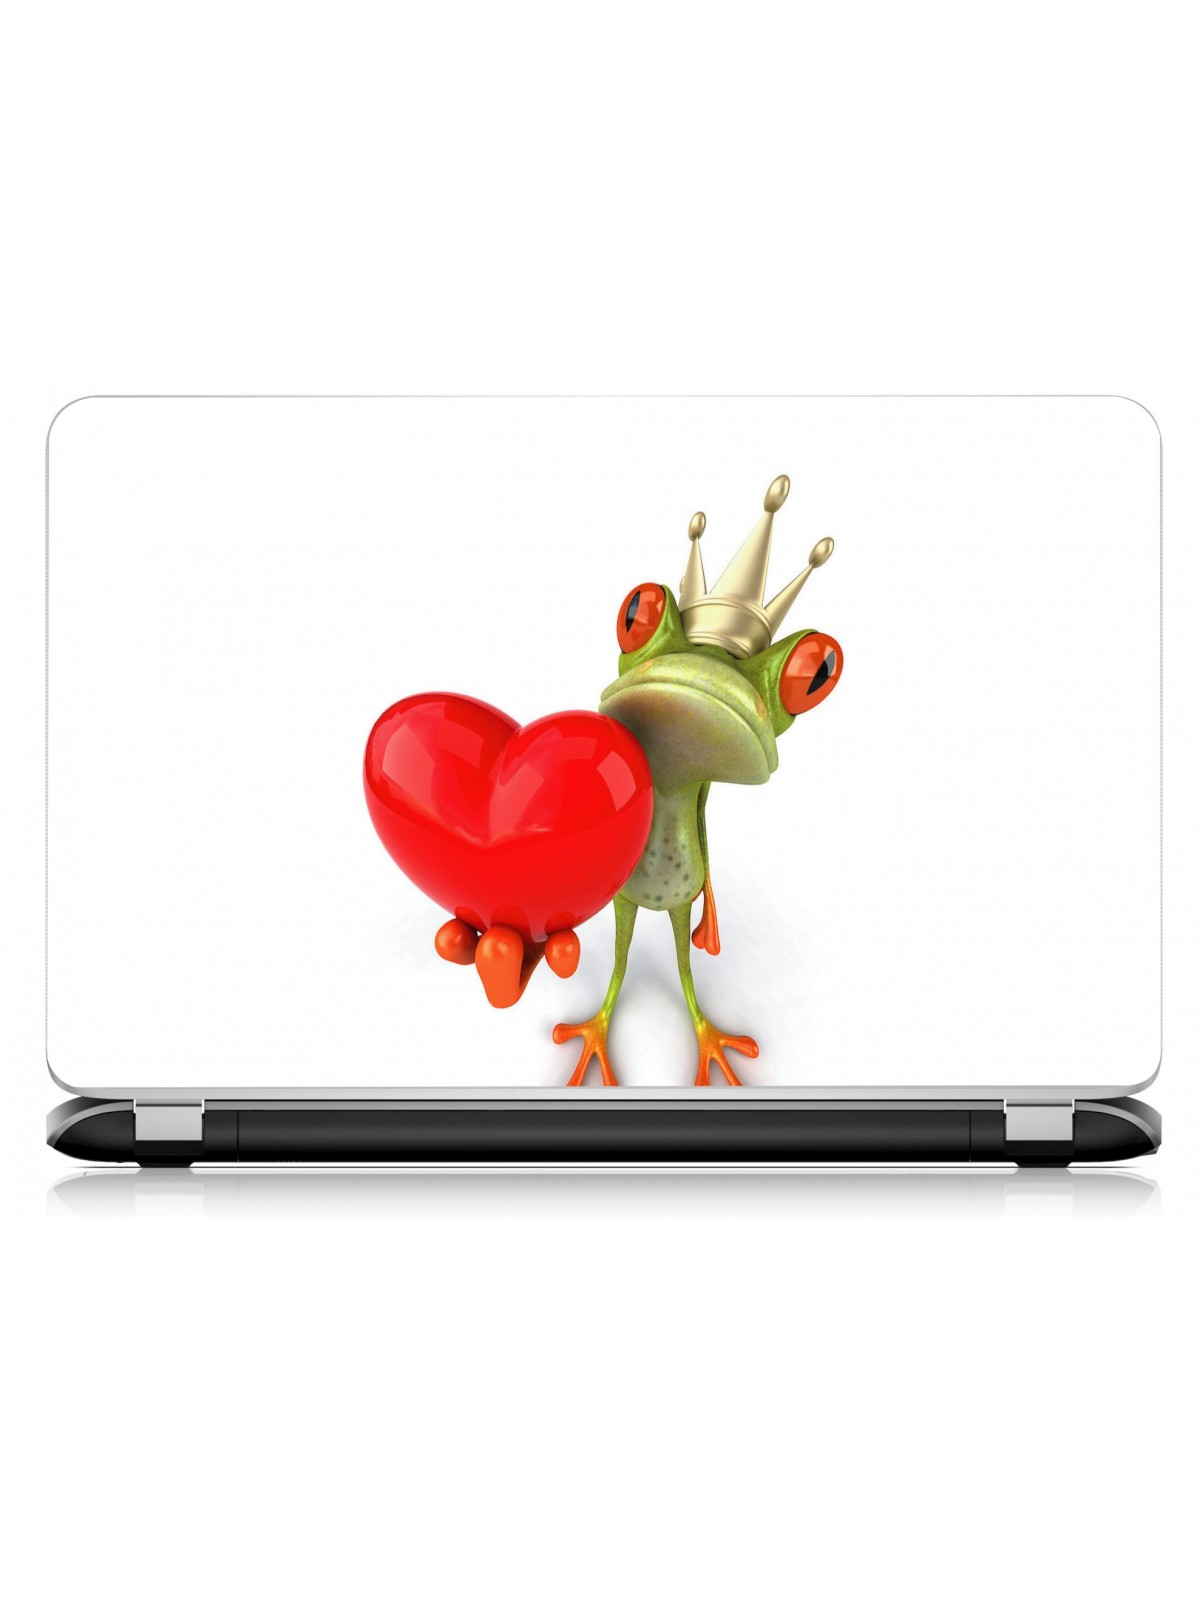 Stickers Autocollants ordinateur portable PC grenouille